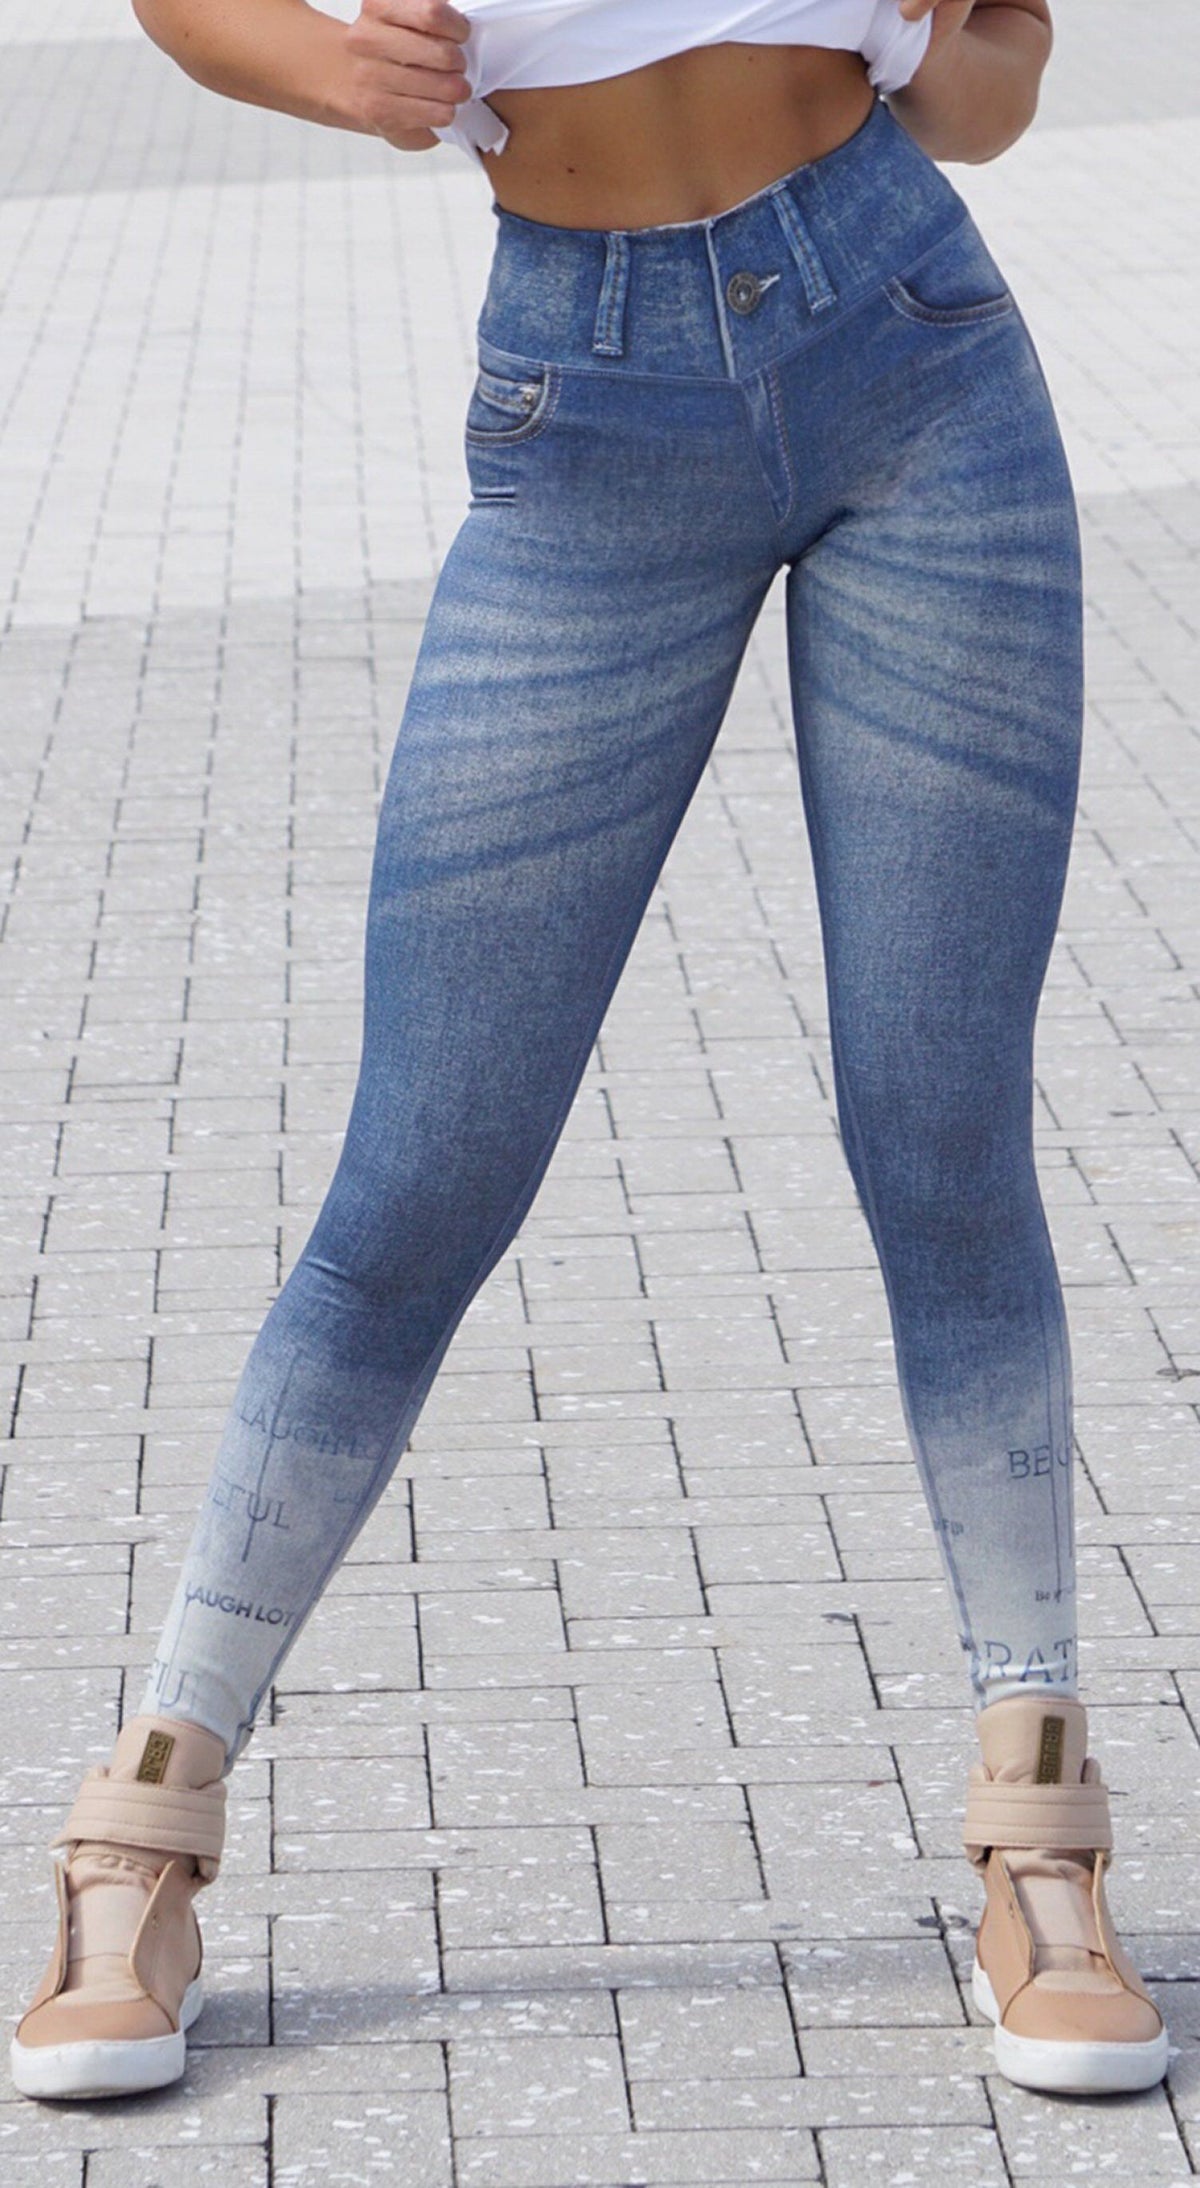 Rola Moca Fake Jeans Leggings